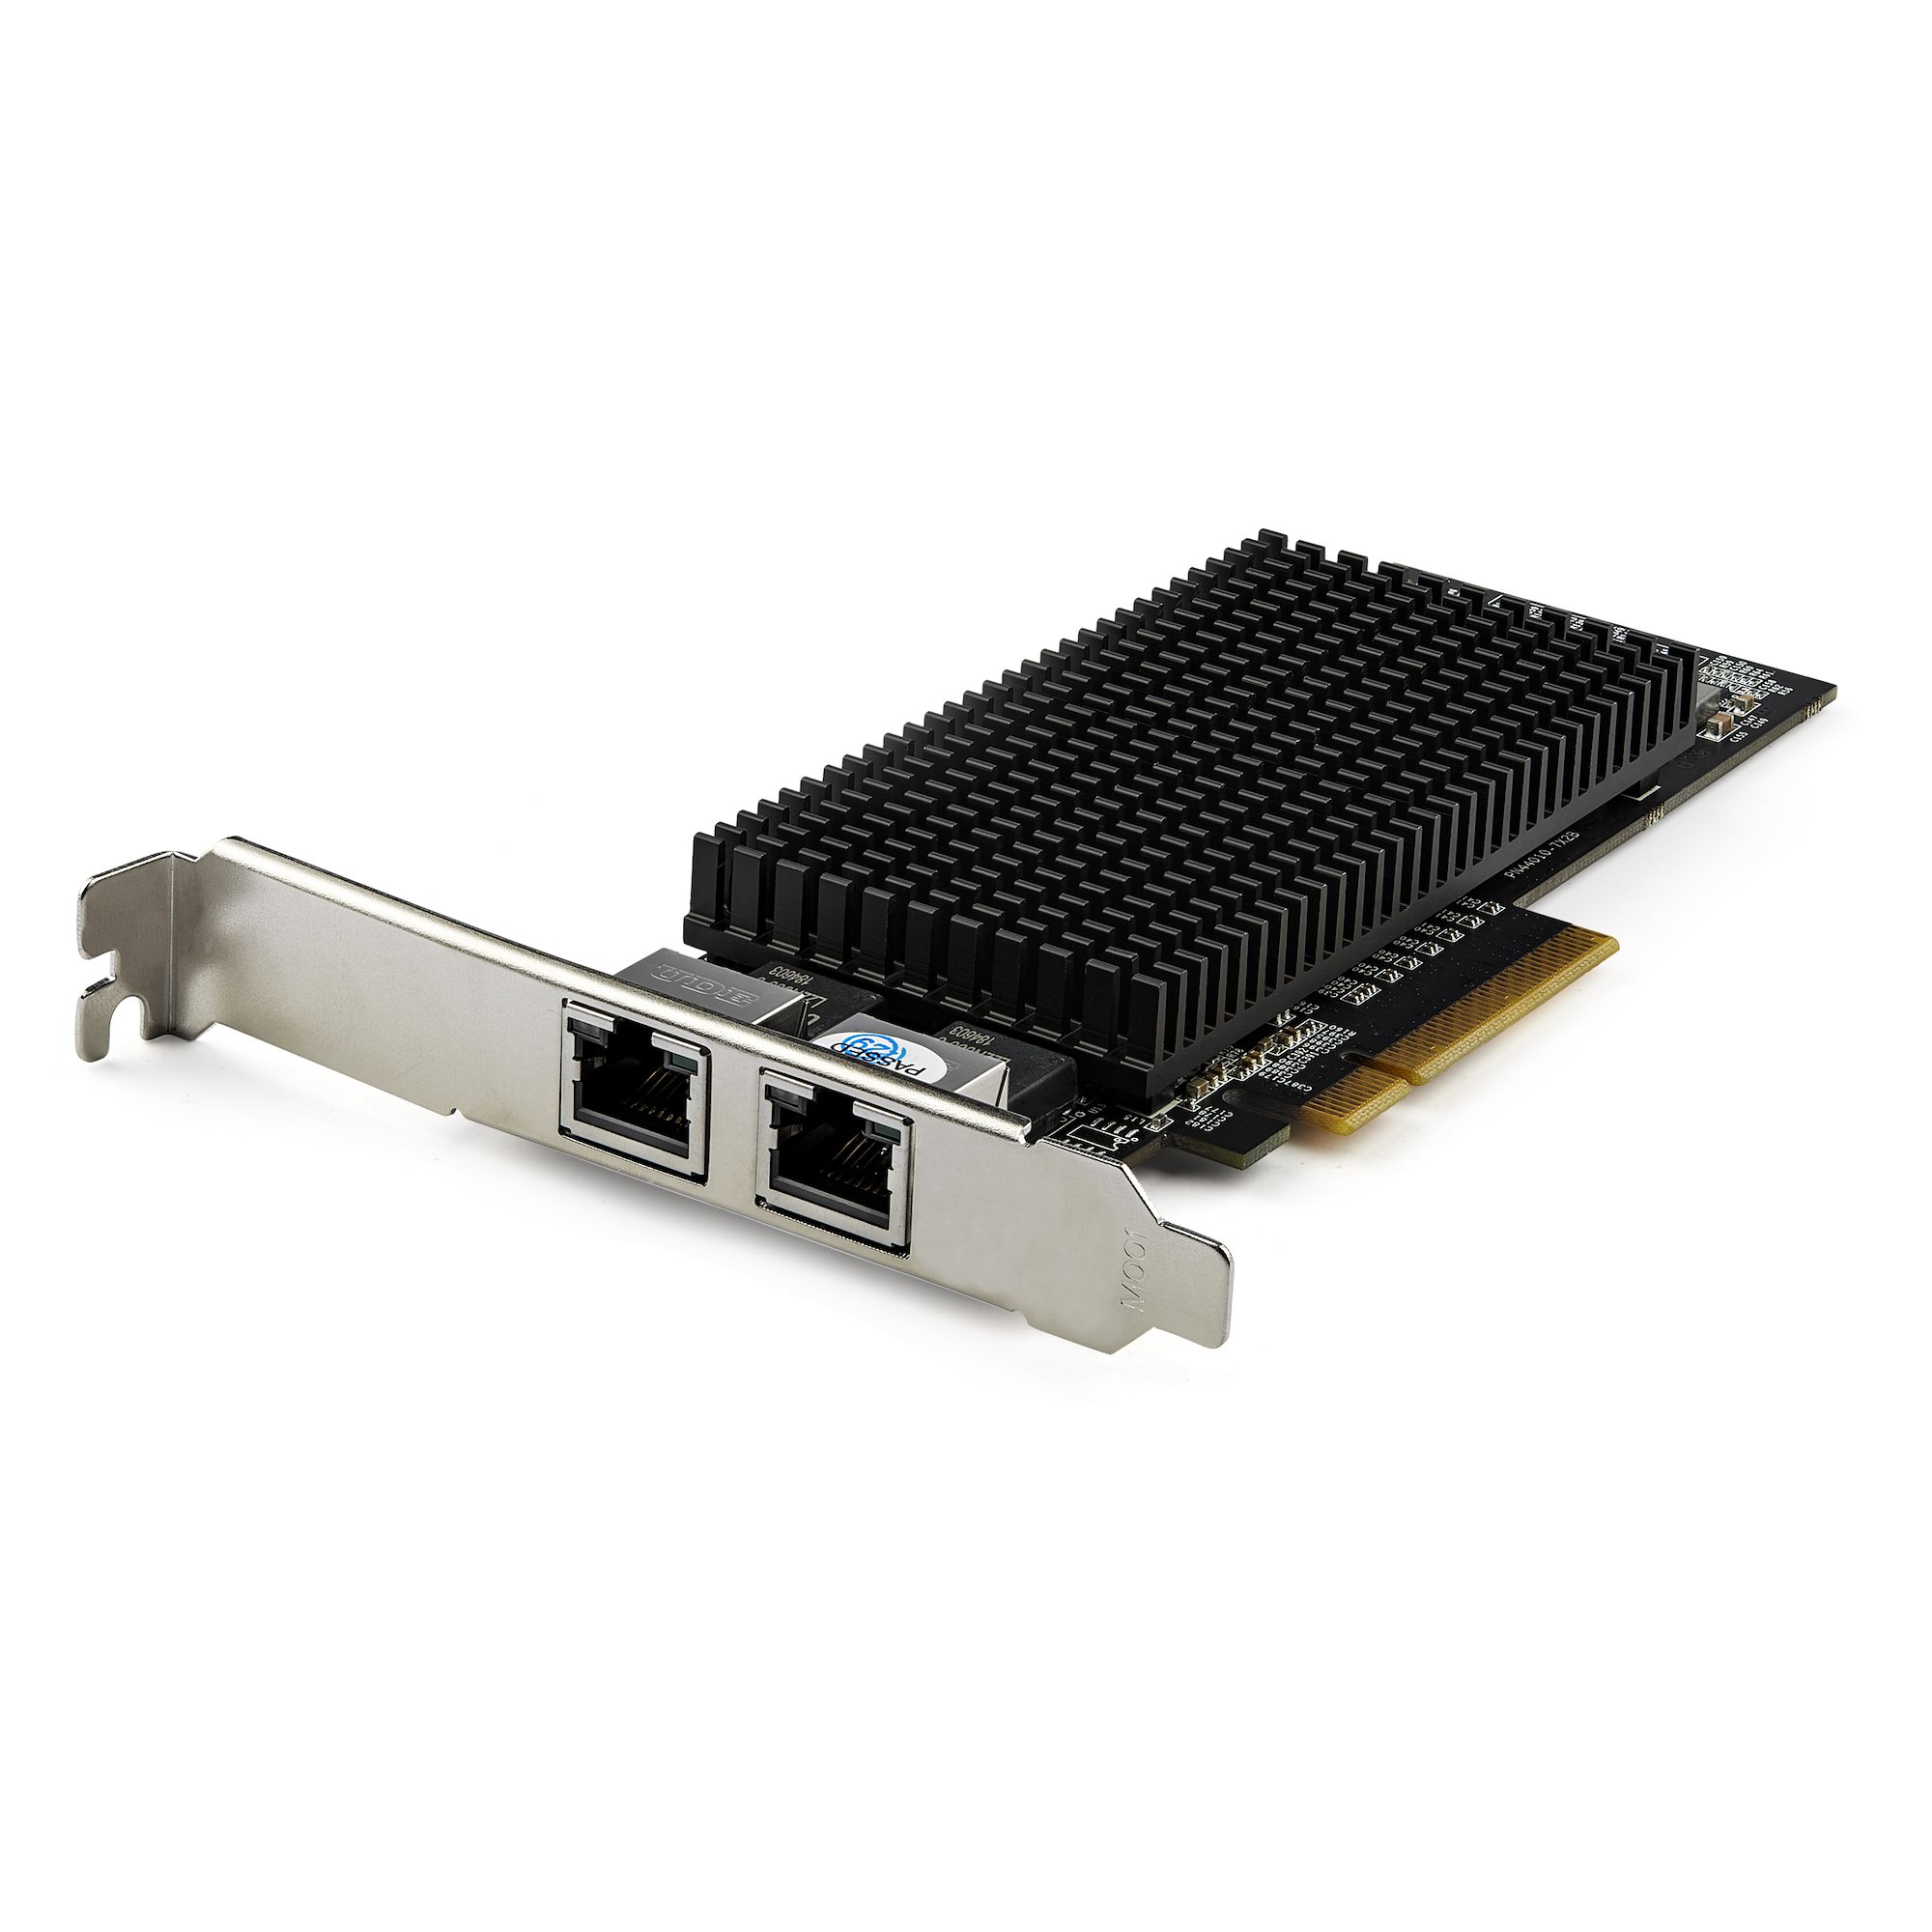 デュアルポート増設PCIe LANカード 10GBASE-T/NBASE-T対応 - ネットワークアダプタ カード | StarTech.com 日本